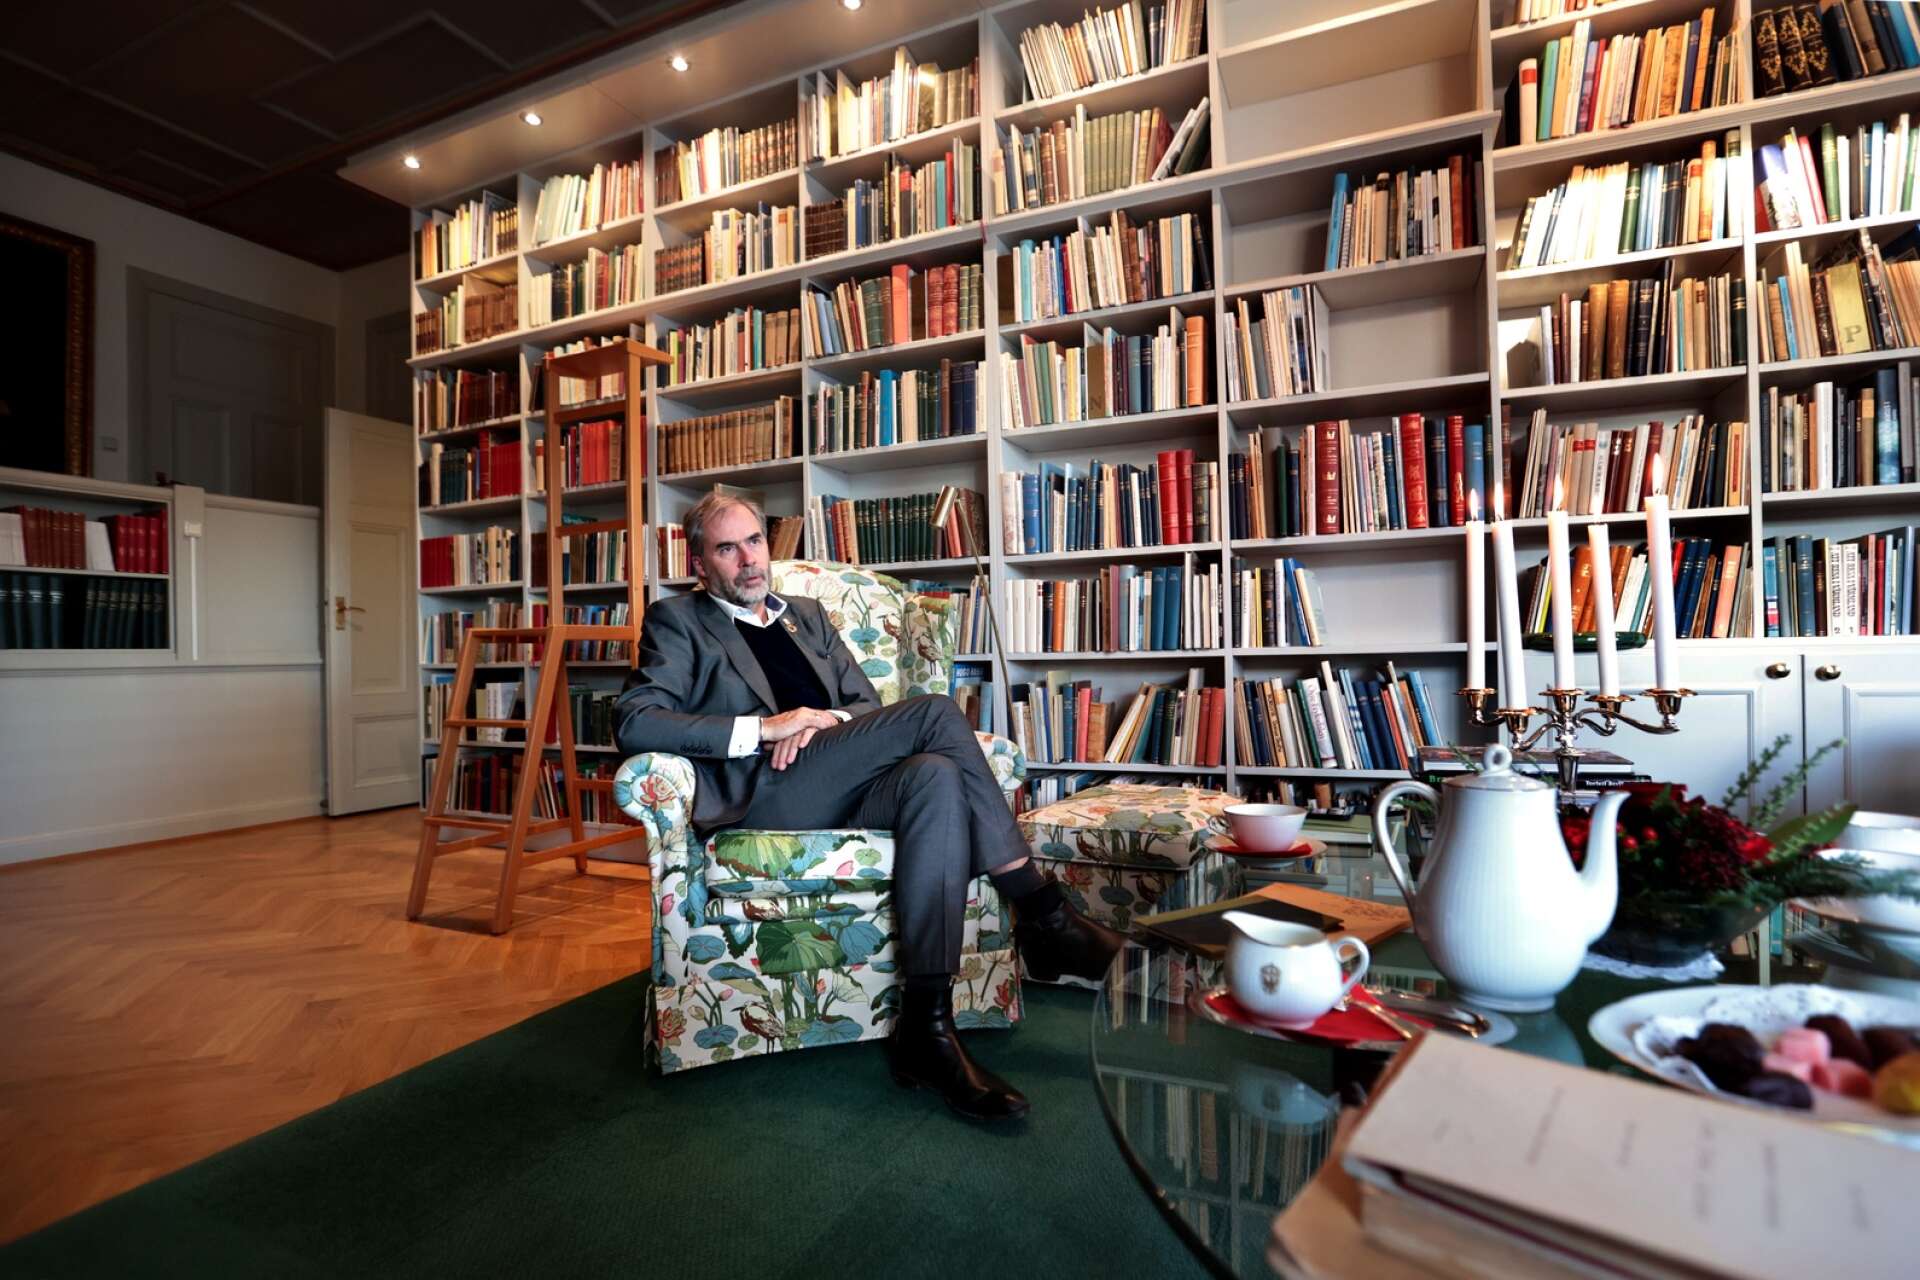 Landshövding Georg Andrén uppskattar att ha ett bibliotek i residenset. Där är han ibland och botaniserar bland böckerna.